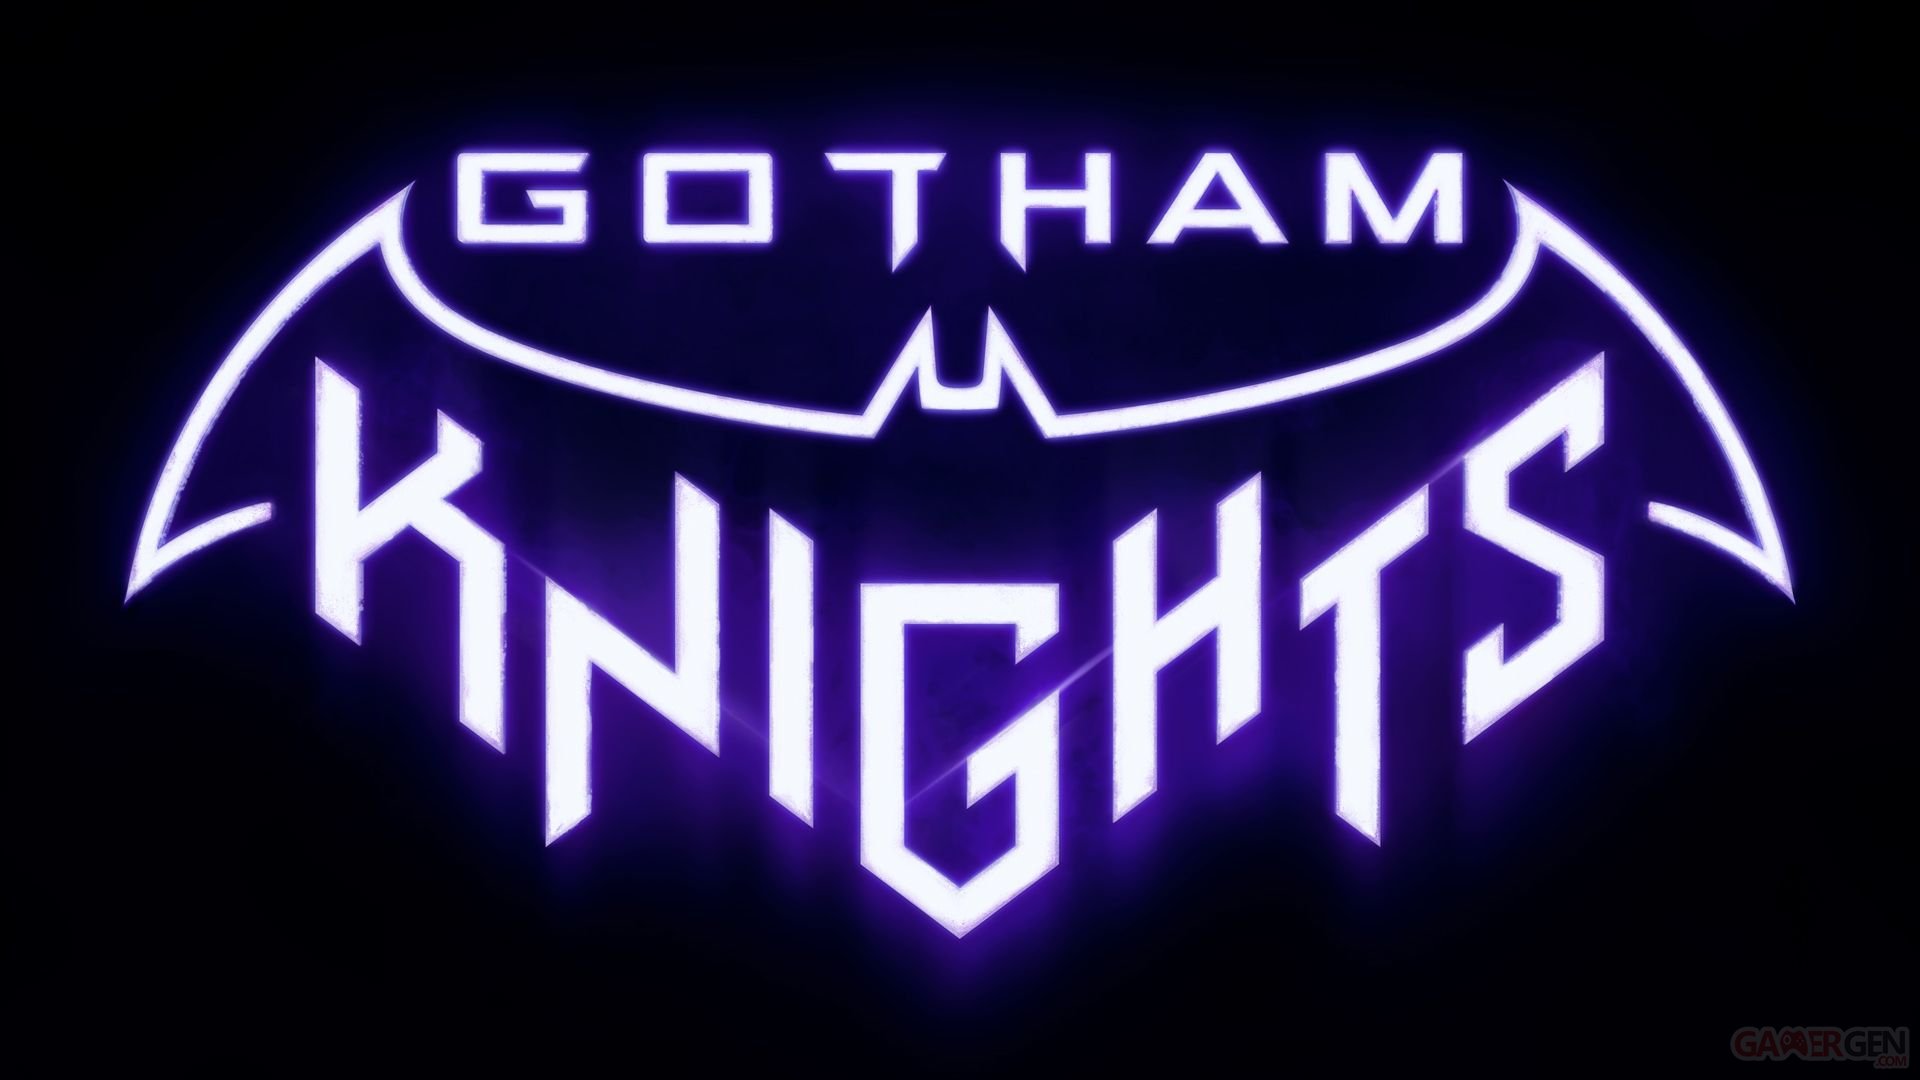 gotham knights steam download